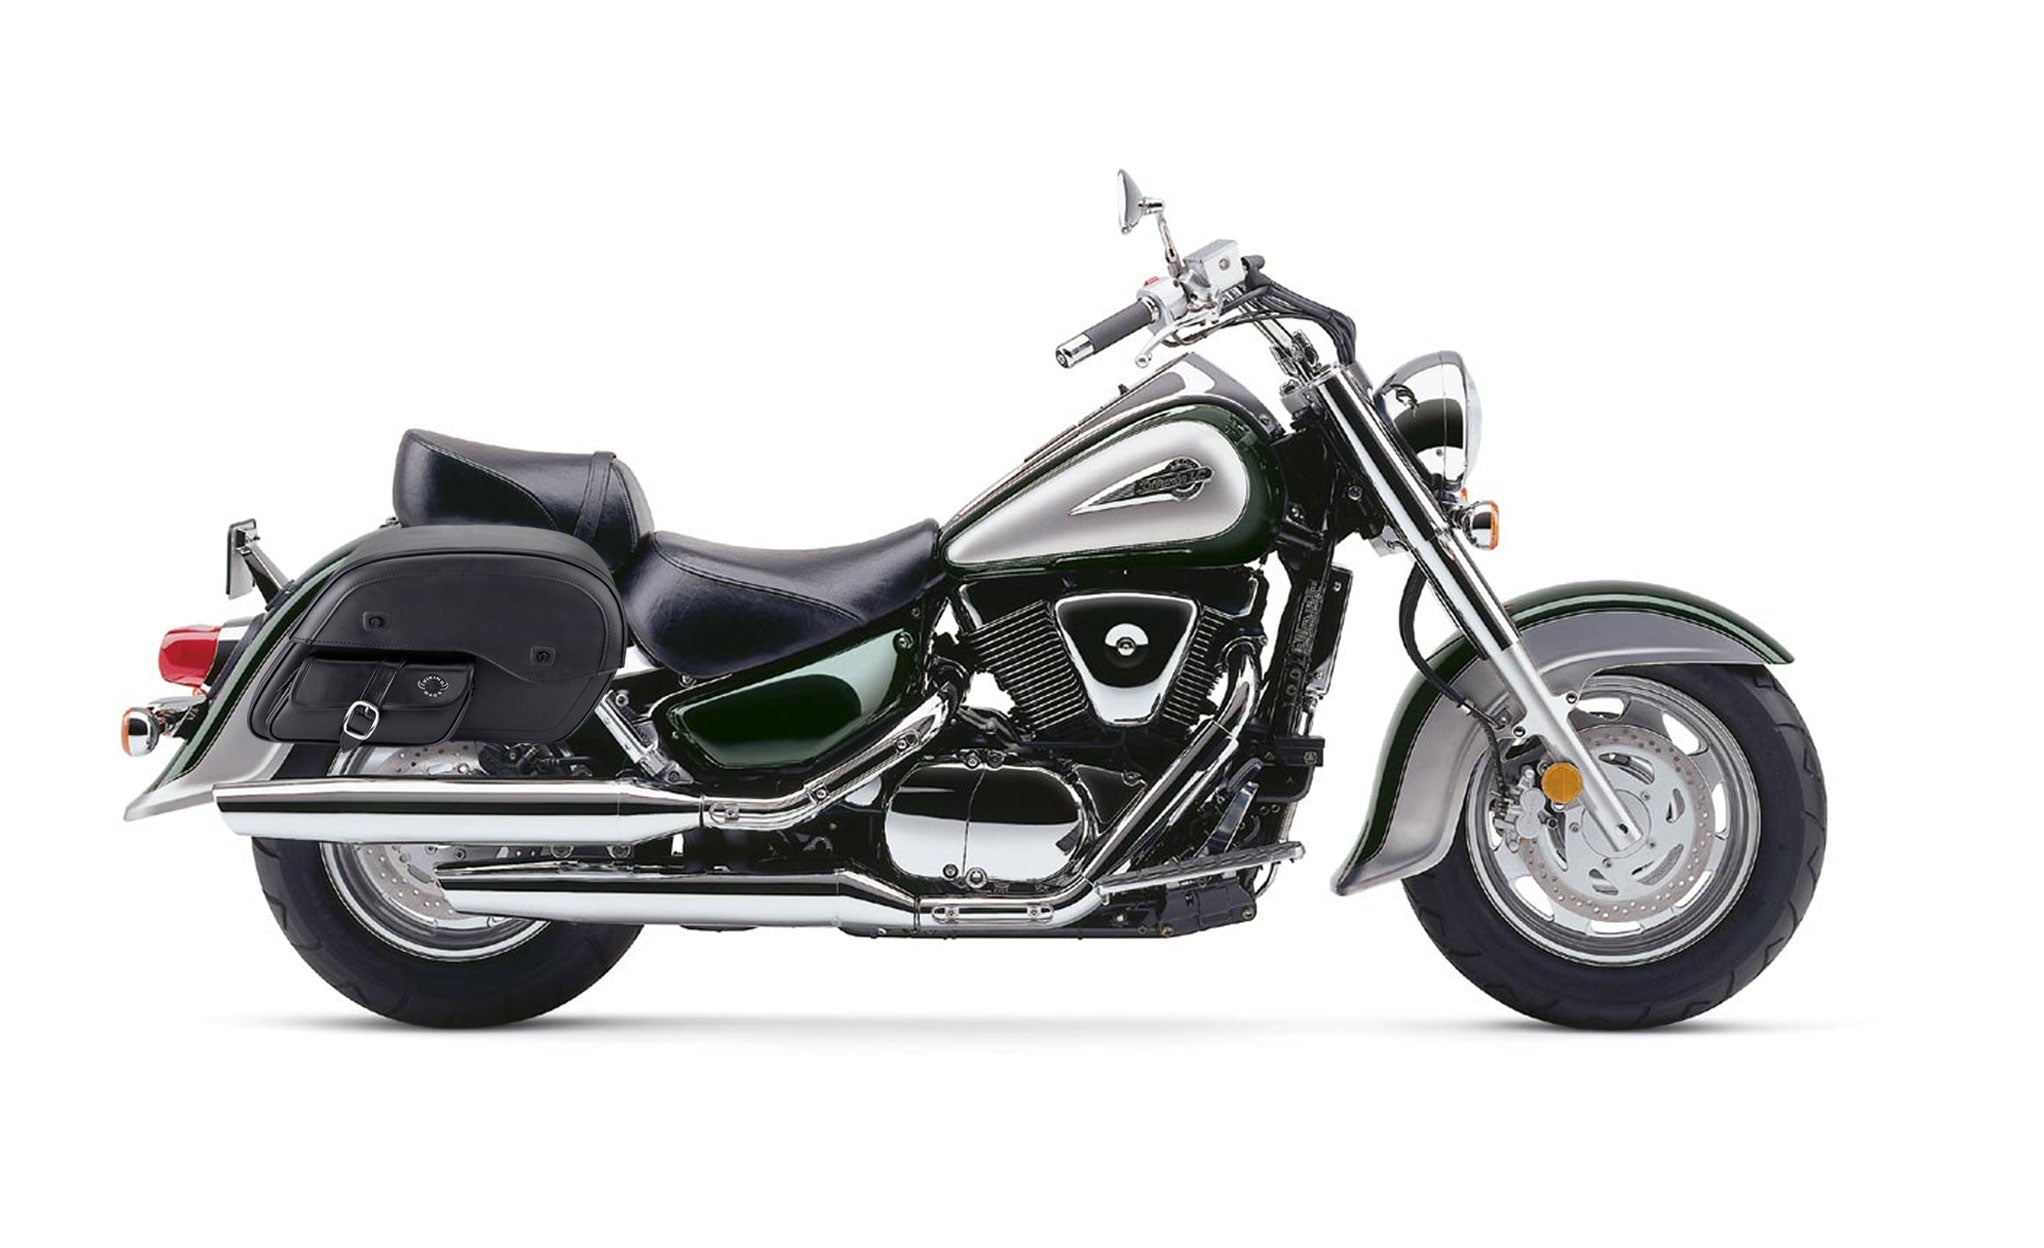 Viking Dweller Side Pocket Large Suzuki Intruder 1500 Vl1500 Leather Motorcycle Saddlebags on Bike Photo @expand